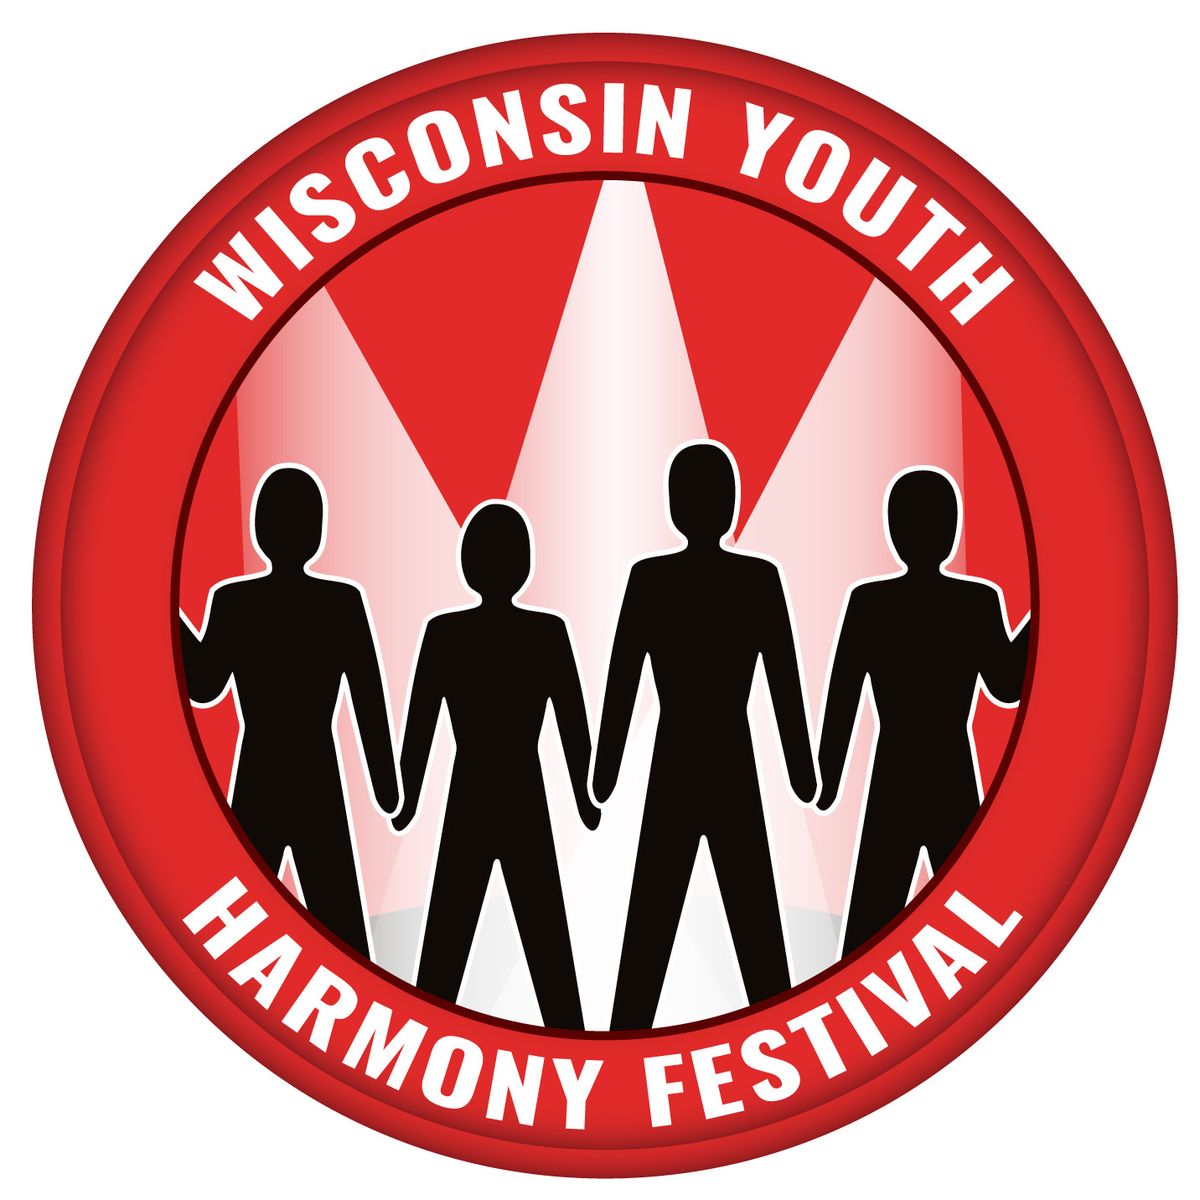 Wisconsin Youth Harmony Festival